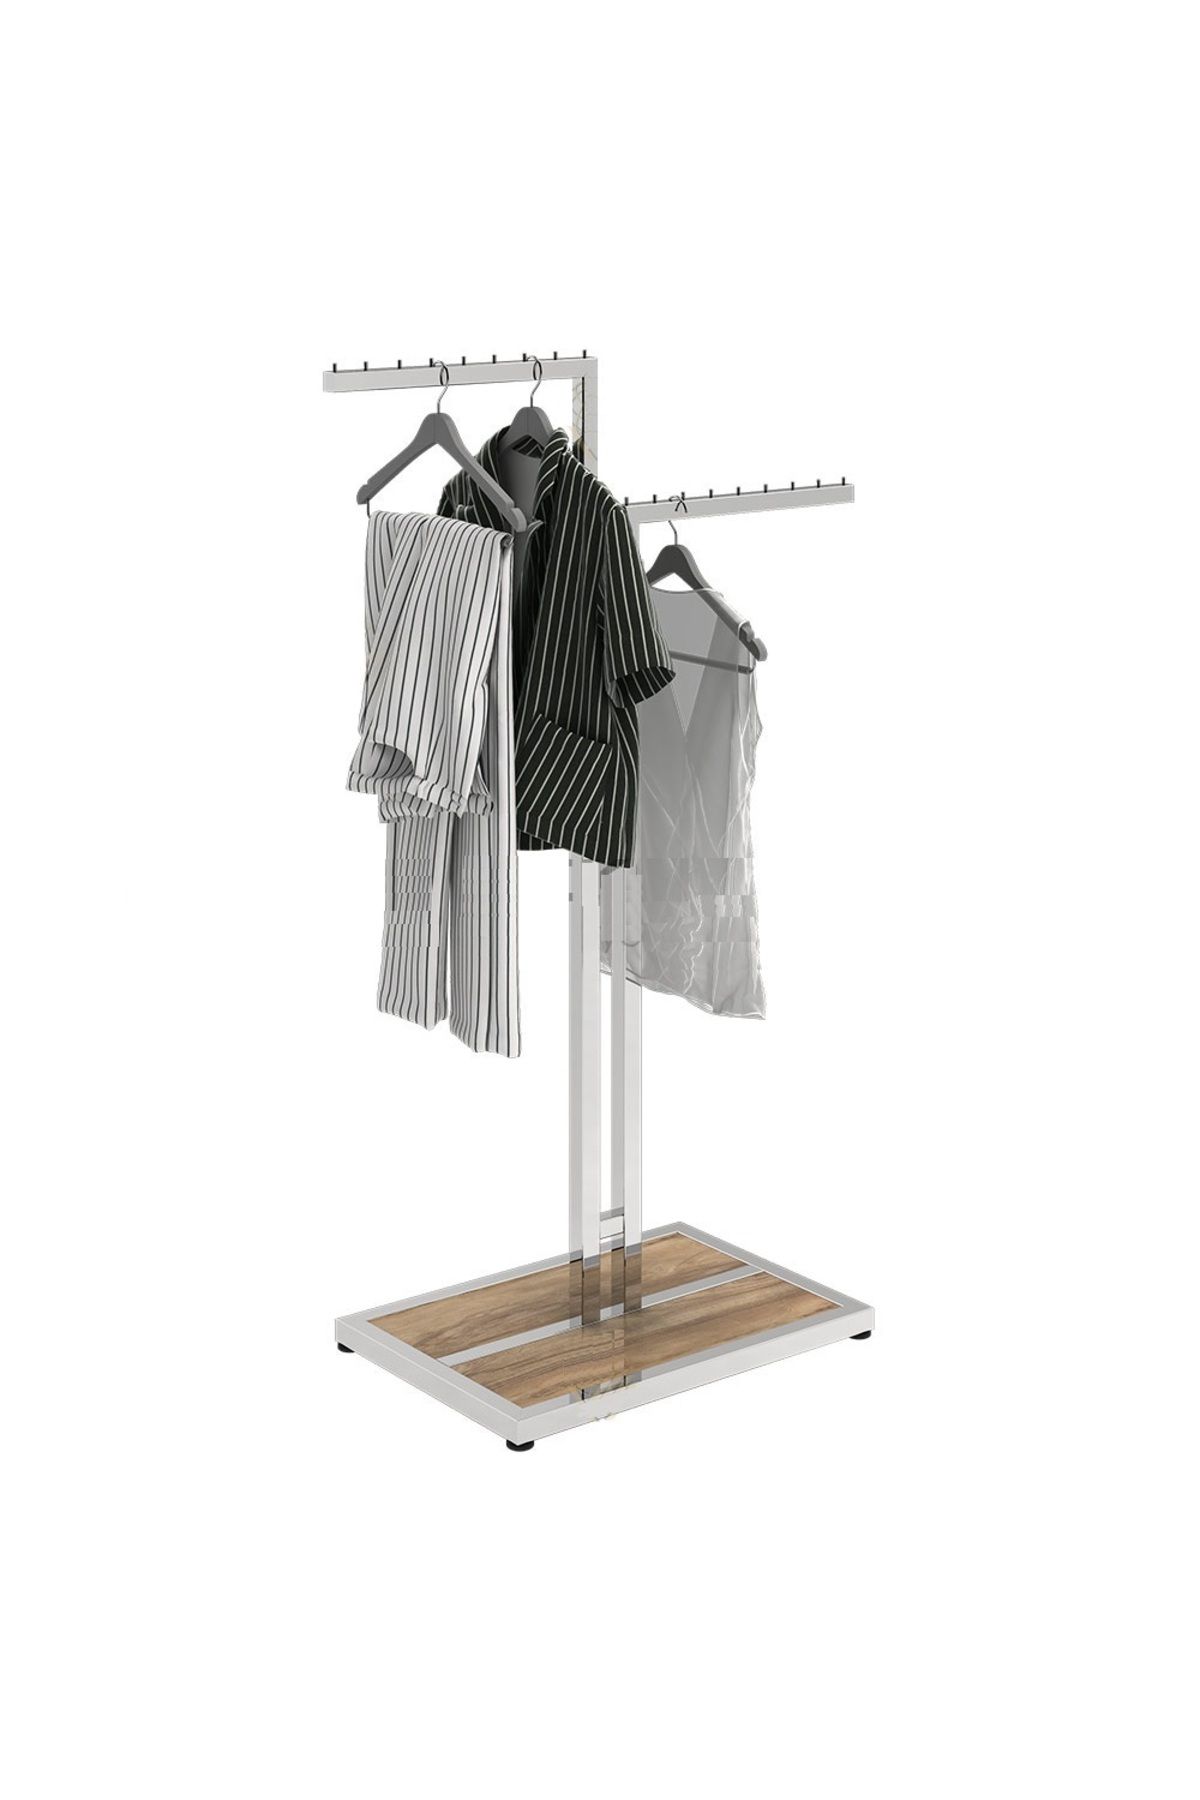 KALE Elbise Askı Stand, Mağaza Askı Standı Ayarlı Model